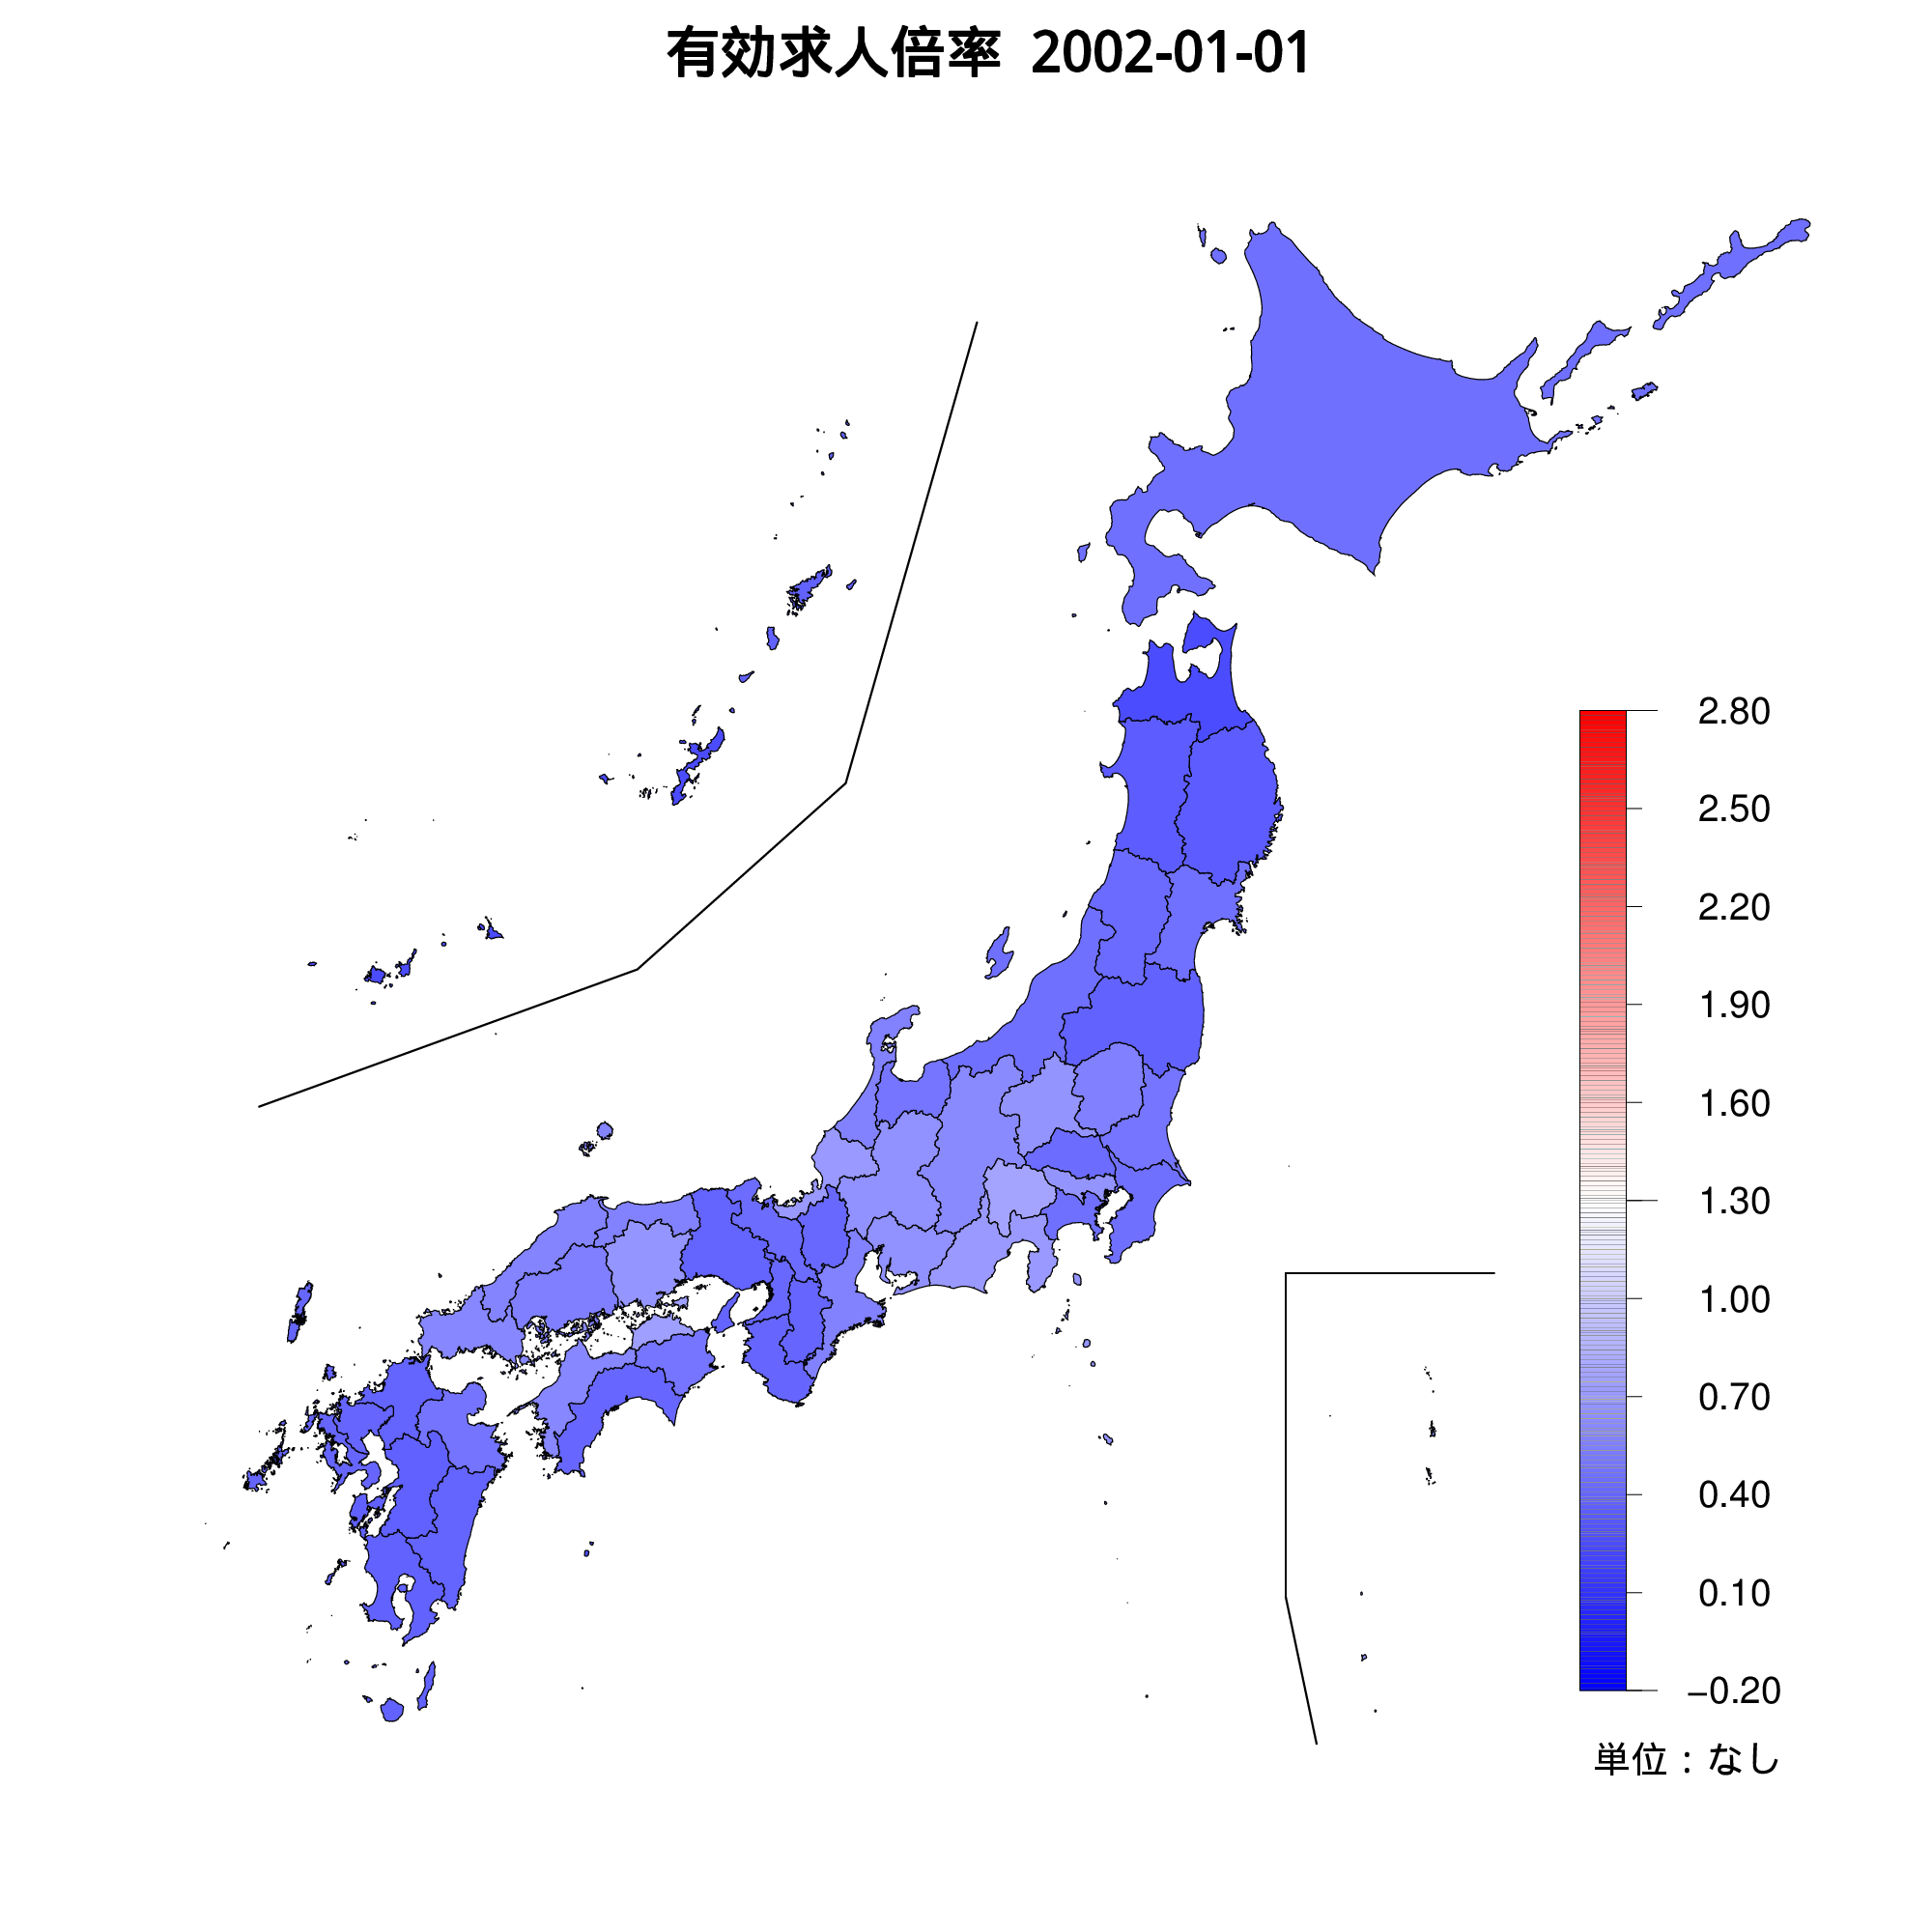 各都道府県の有効求人倍率を示す地図（2002年01月）